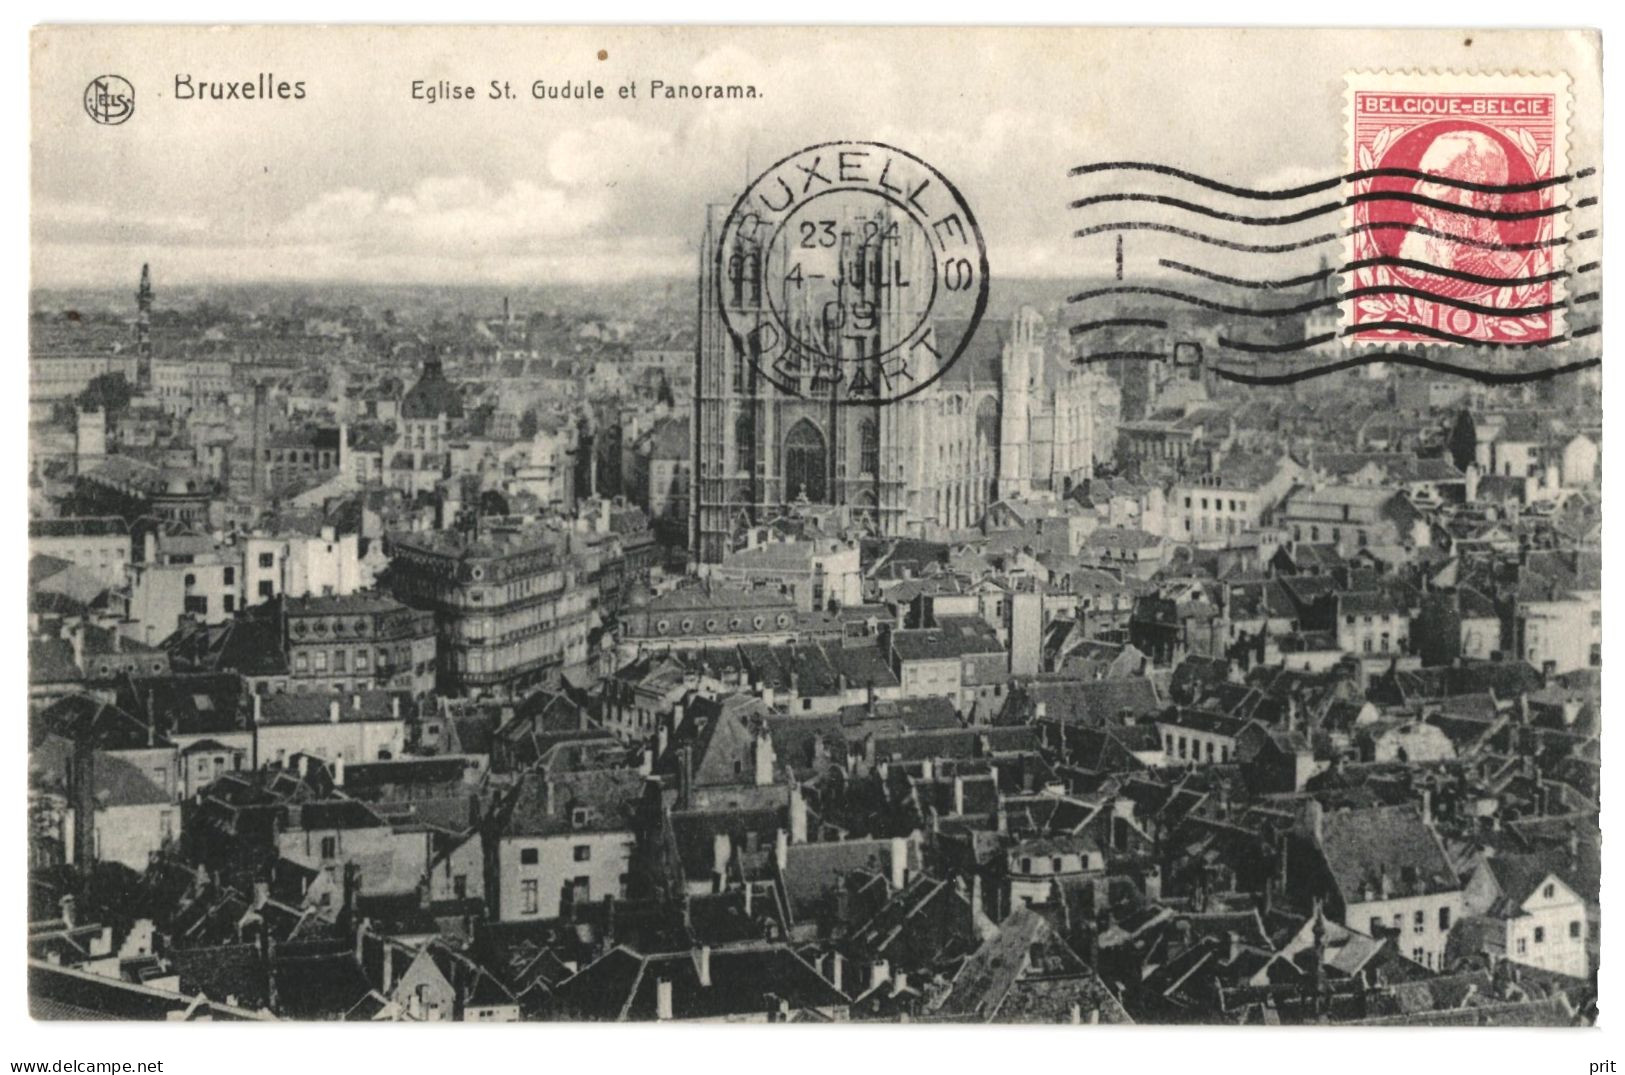 Bruxelles Eglise St. Gudule Et Panorama 1909 Used Real Photo Postcard. Publisher Ed.Nels, Bruxelles - Panoramische Zichten, Meerdere Zichten